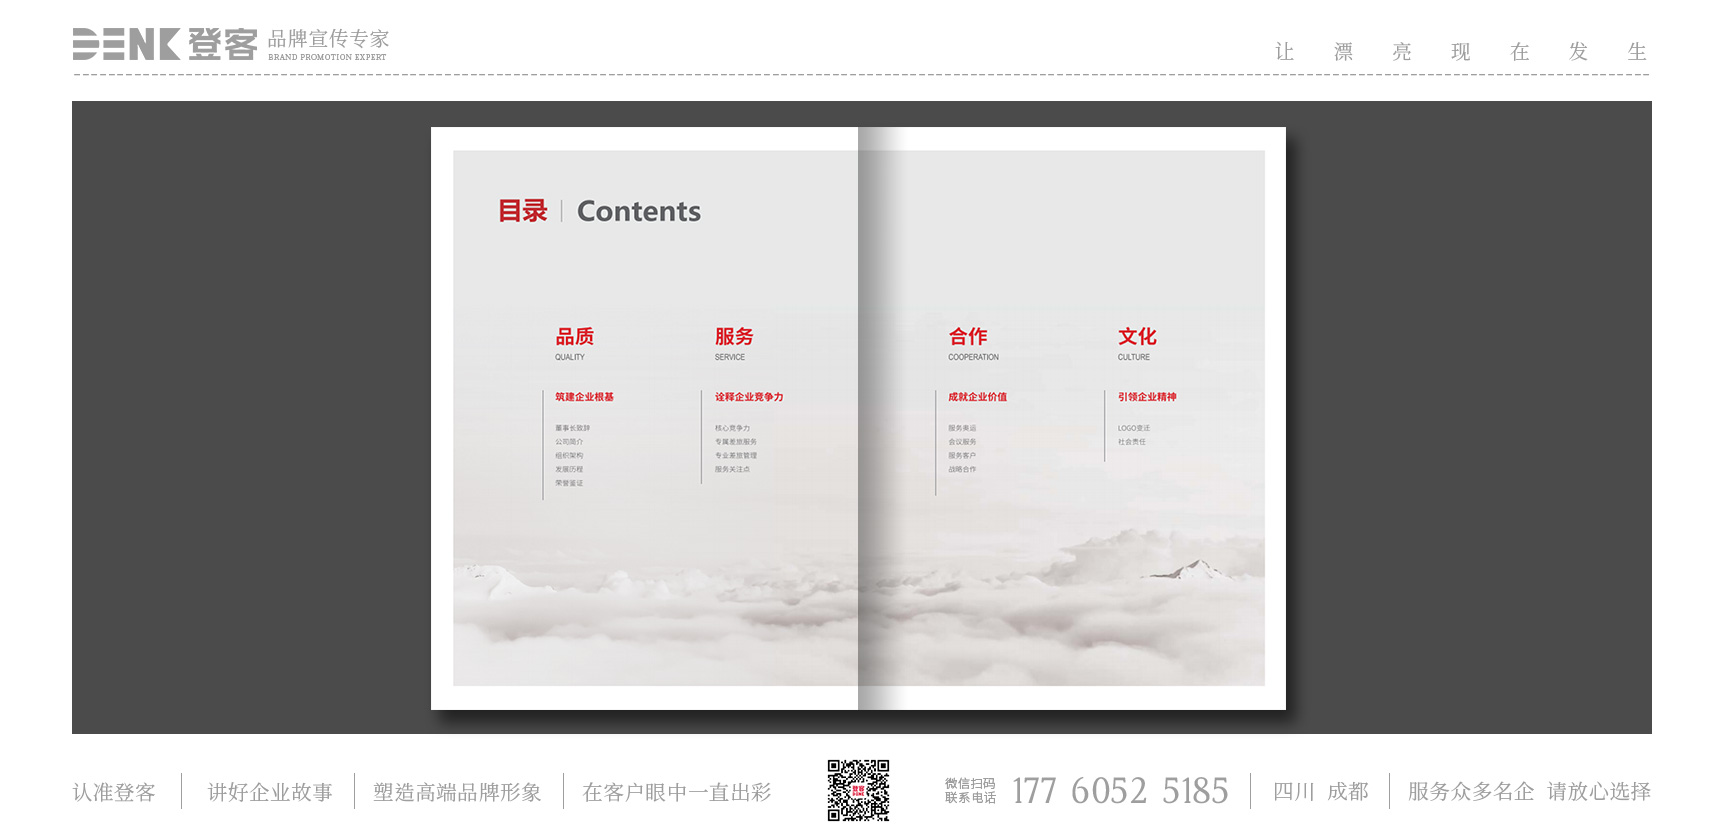 中国航空服务企业宣传册设计、服务手册设计，服务画册设计，企业服务宣传册设计，公司宣传册设计，企业手册设计